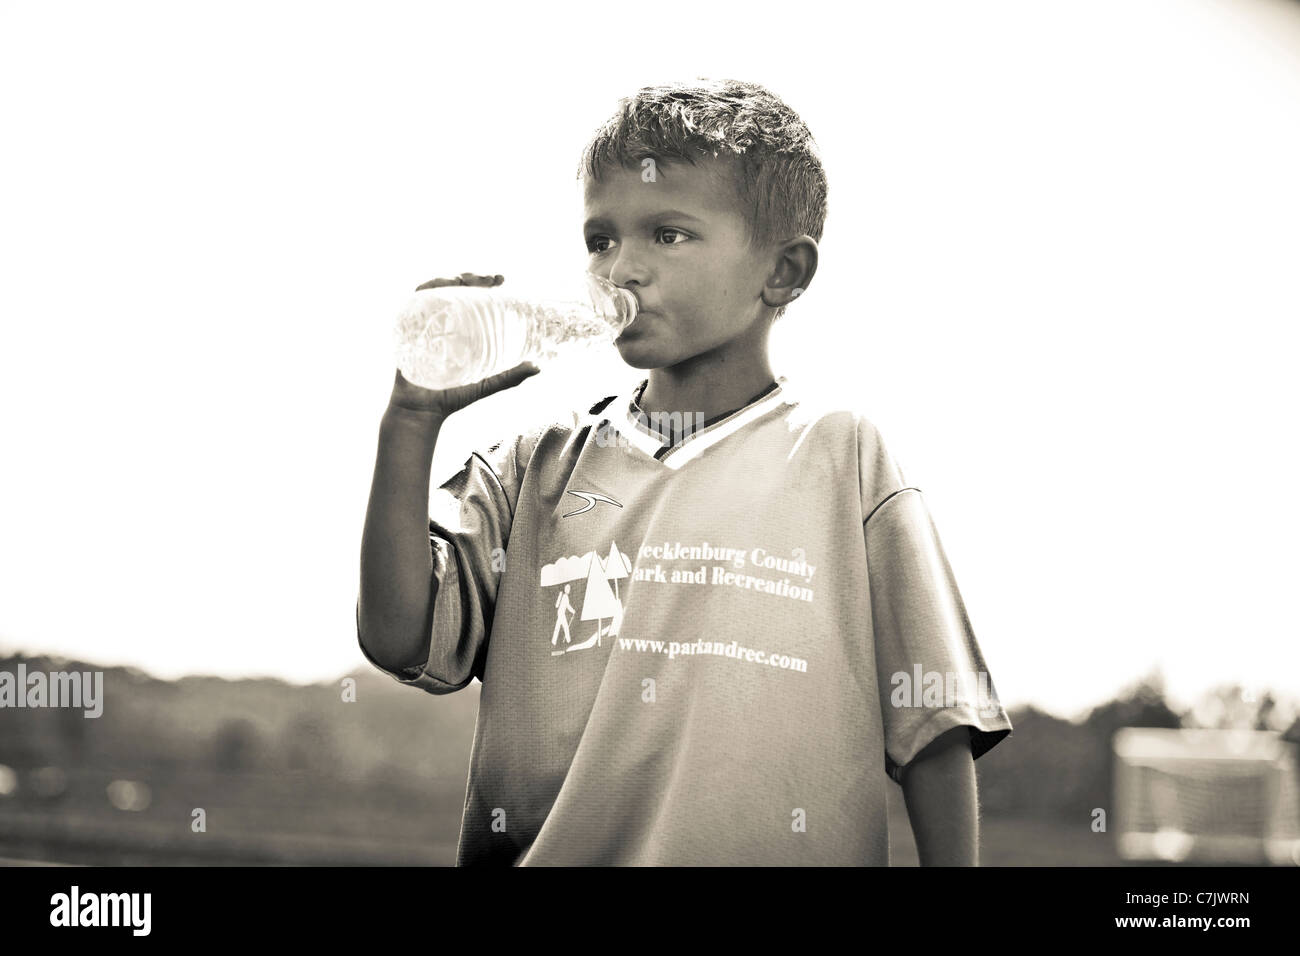 Porträt eines jungen in Flaschen abgefülltes Wasser zu trinken Stockfoto